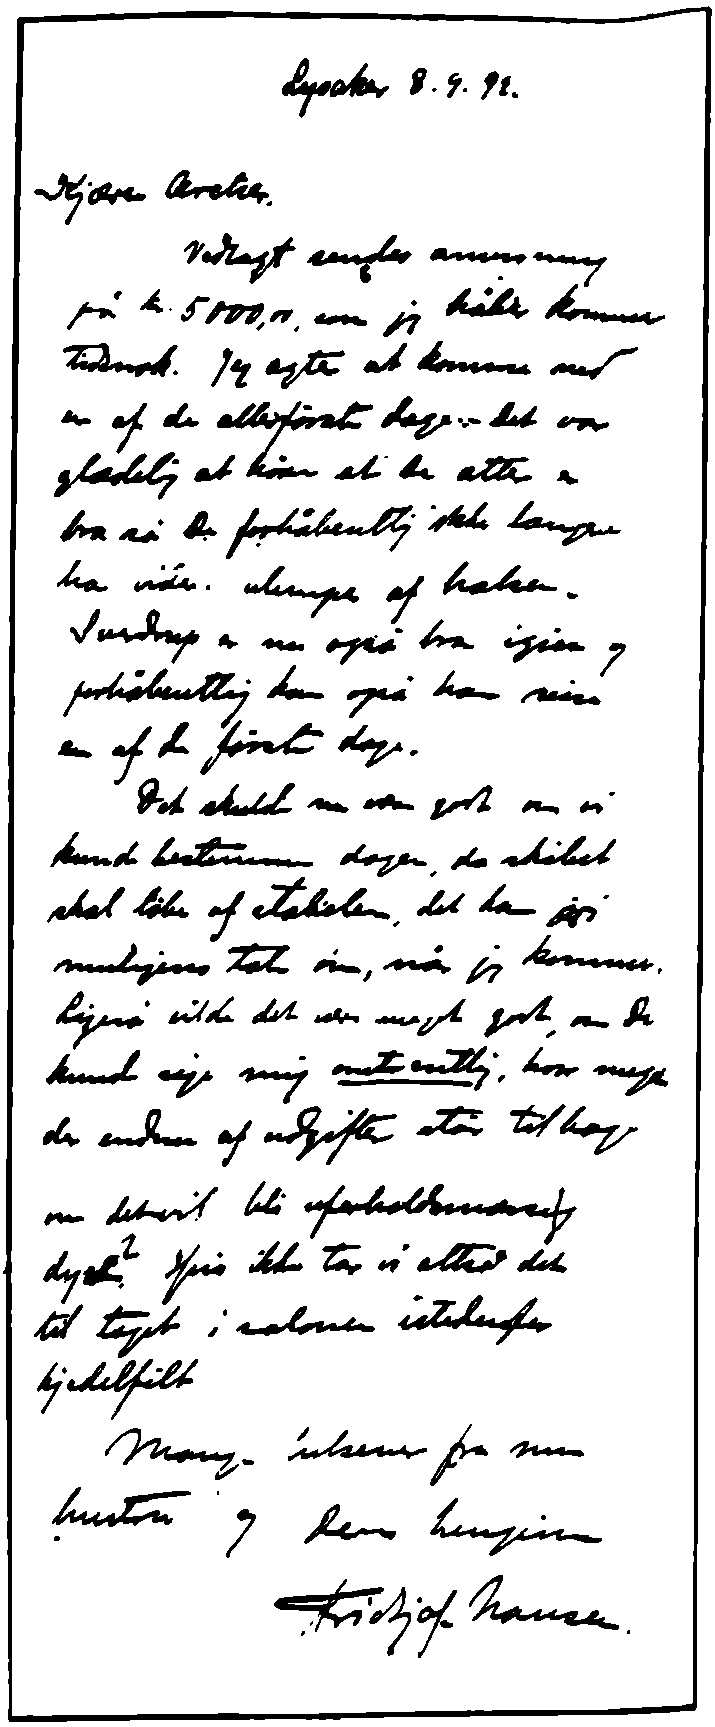 В этом письме Колину Арчеру от 8 сентября 1892 г. Фритьоф Нансен называет стоимость такелажа, парусов и обеих больших шлюпок на борту «Фрама»